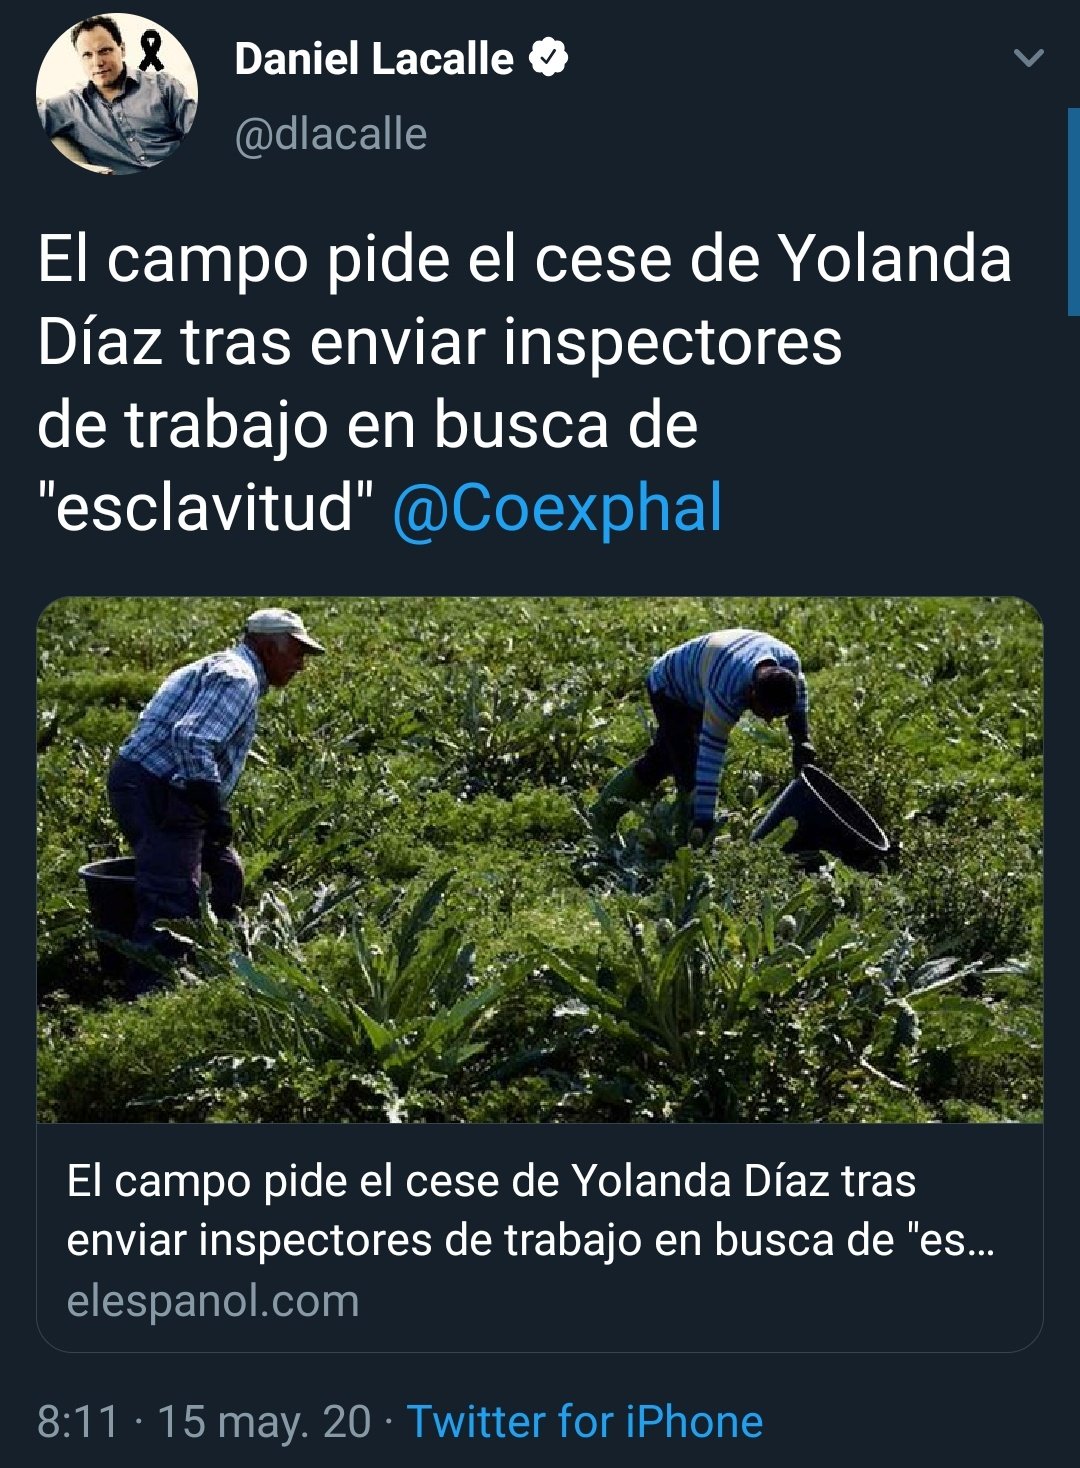 Dos noticias se leen mejor juntas: "El campo pide el cese de Yolanda Díaz tras enviar inspectores de trabajo en busca de esclavitud"